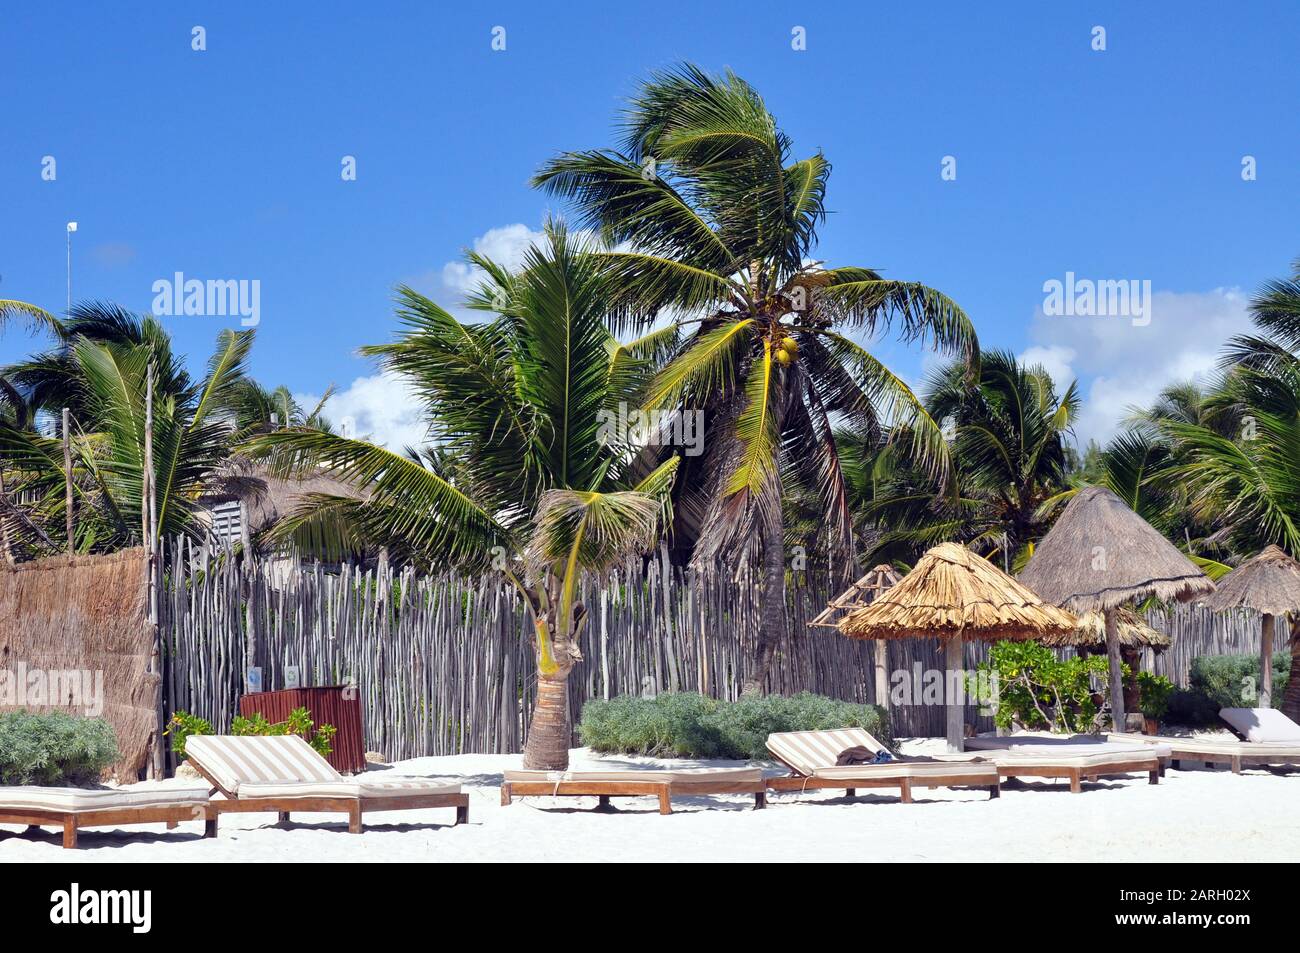 Eine Szene am Strand mit Doppel-Lounge-Stühlen und Palmen. Ein Bambuszaun und Reetdachschirme. Stockfoto